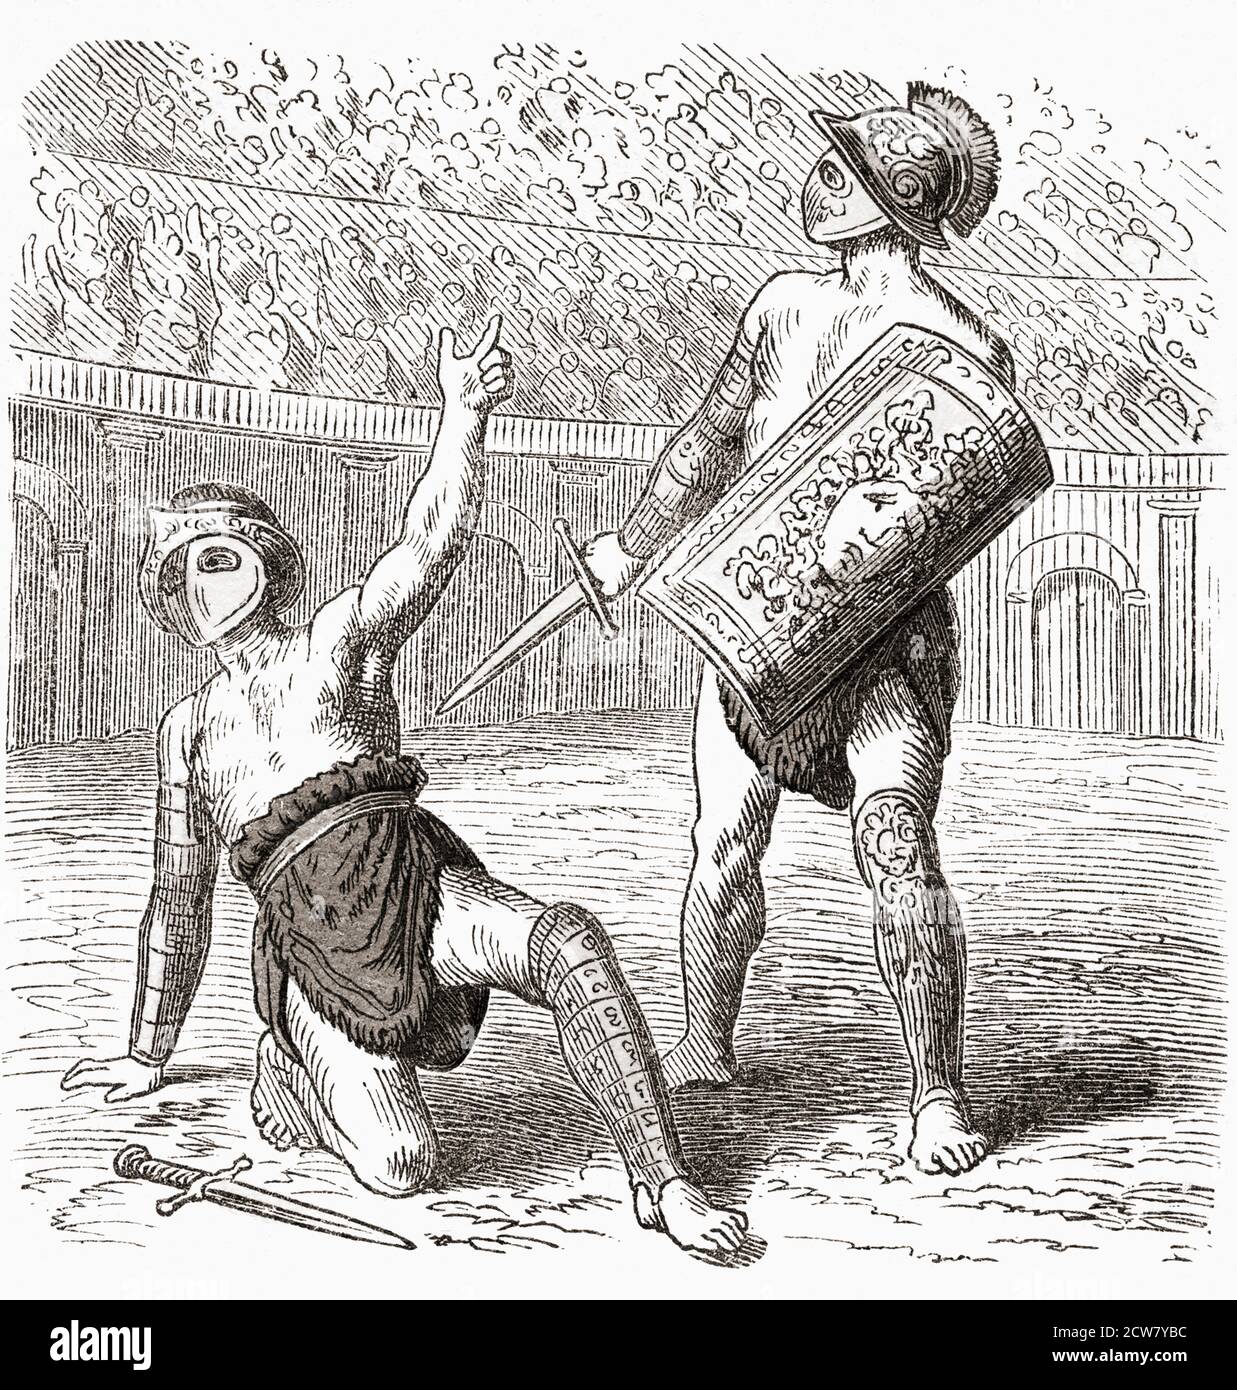 Besiegt Gladiator appelliert an die Menge um Gnade. Nach einer Mitte des 19. Jahrhunderts Illustration von einem unbekannten Künstler. Stockfoto